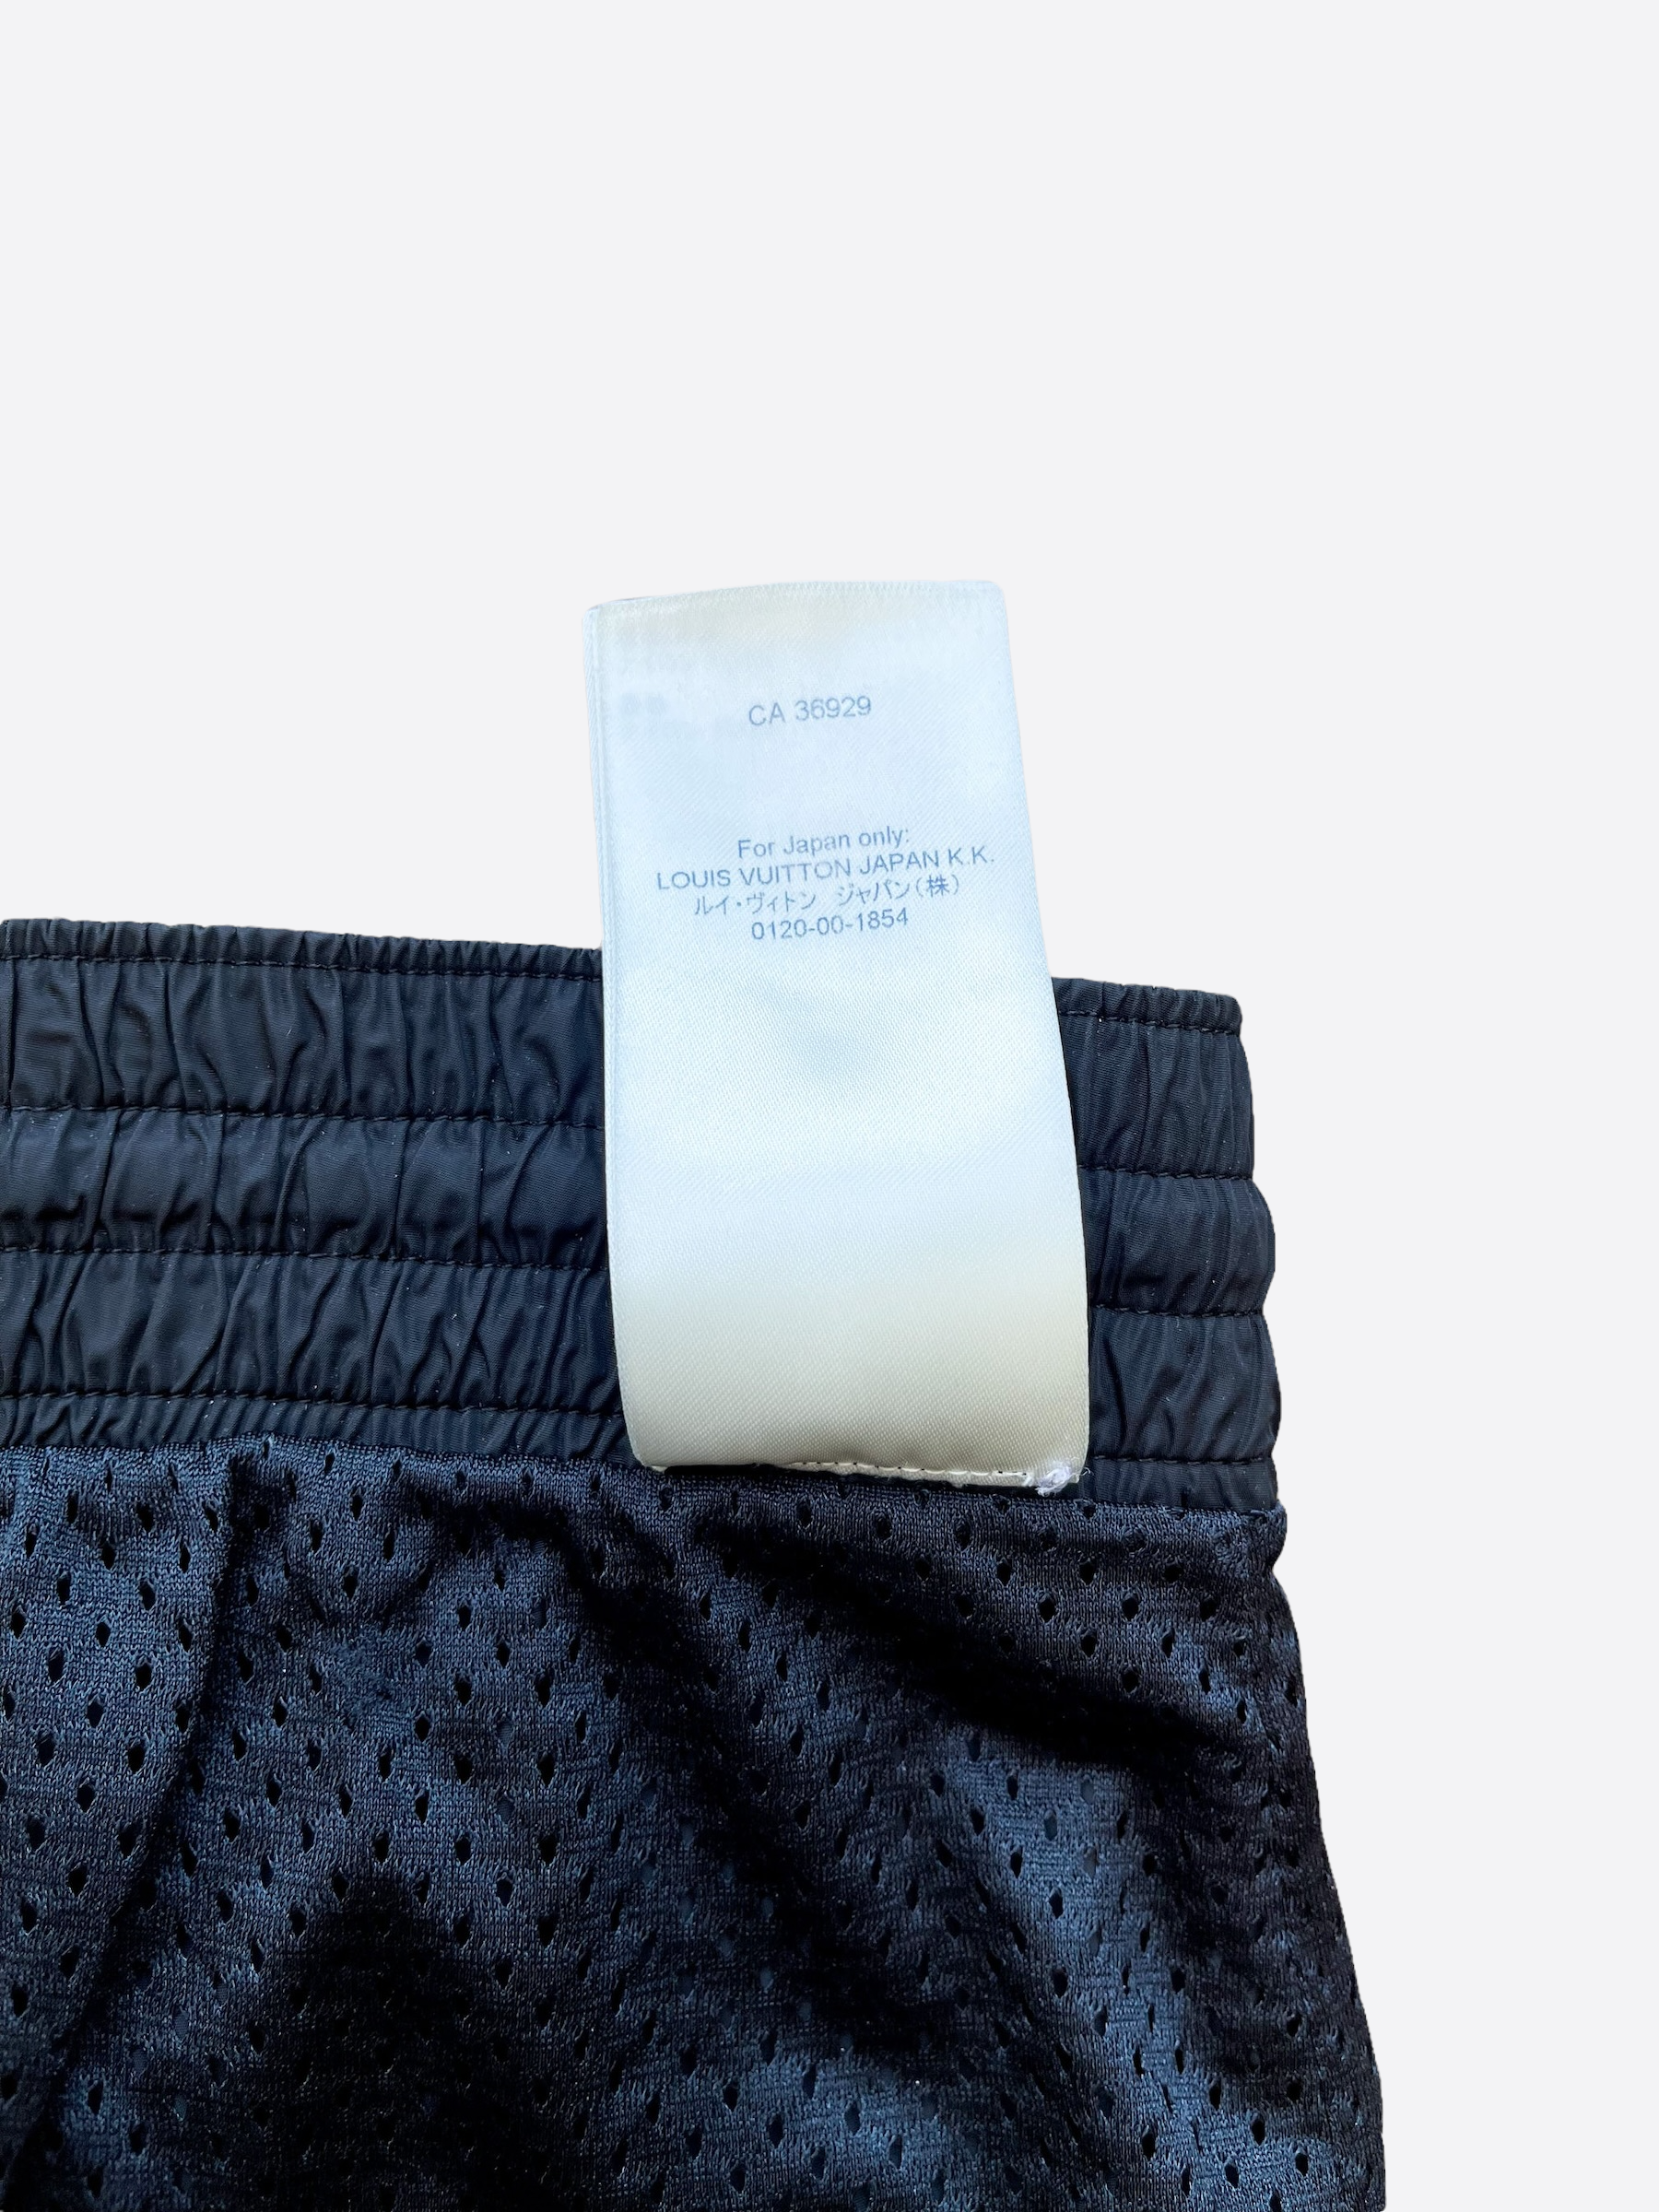 Louis Vuitton Woven Swim Trunks w/ Tags - Black, 11 Rise Swimwear,  Clothing - LOU206322